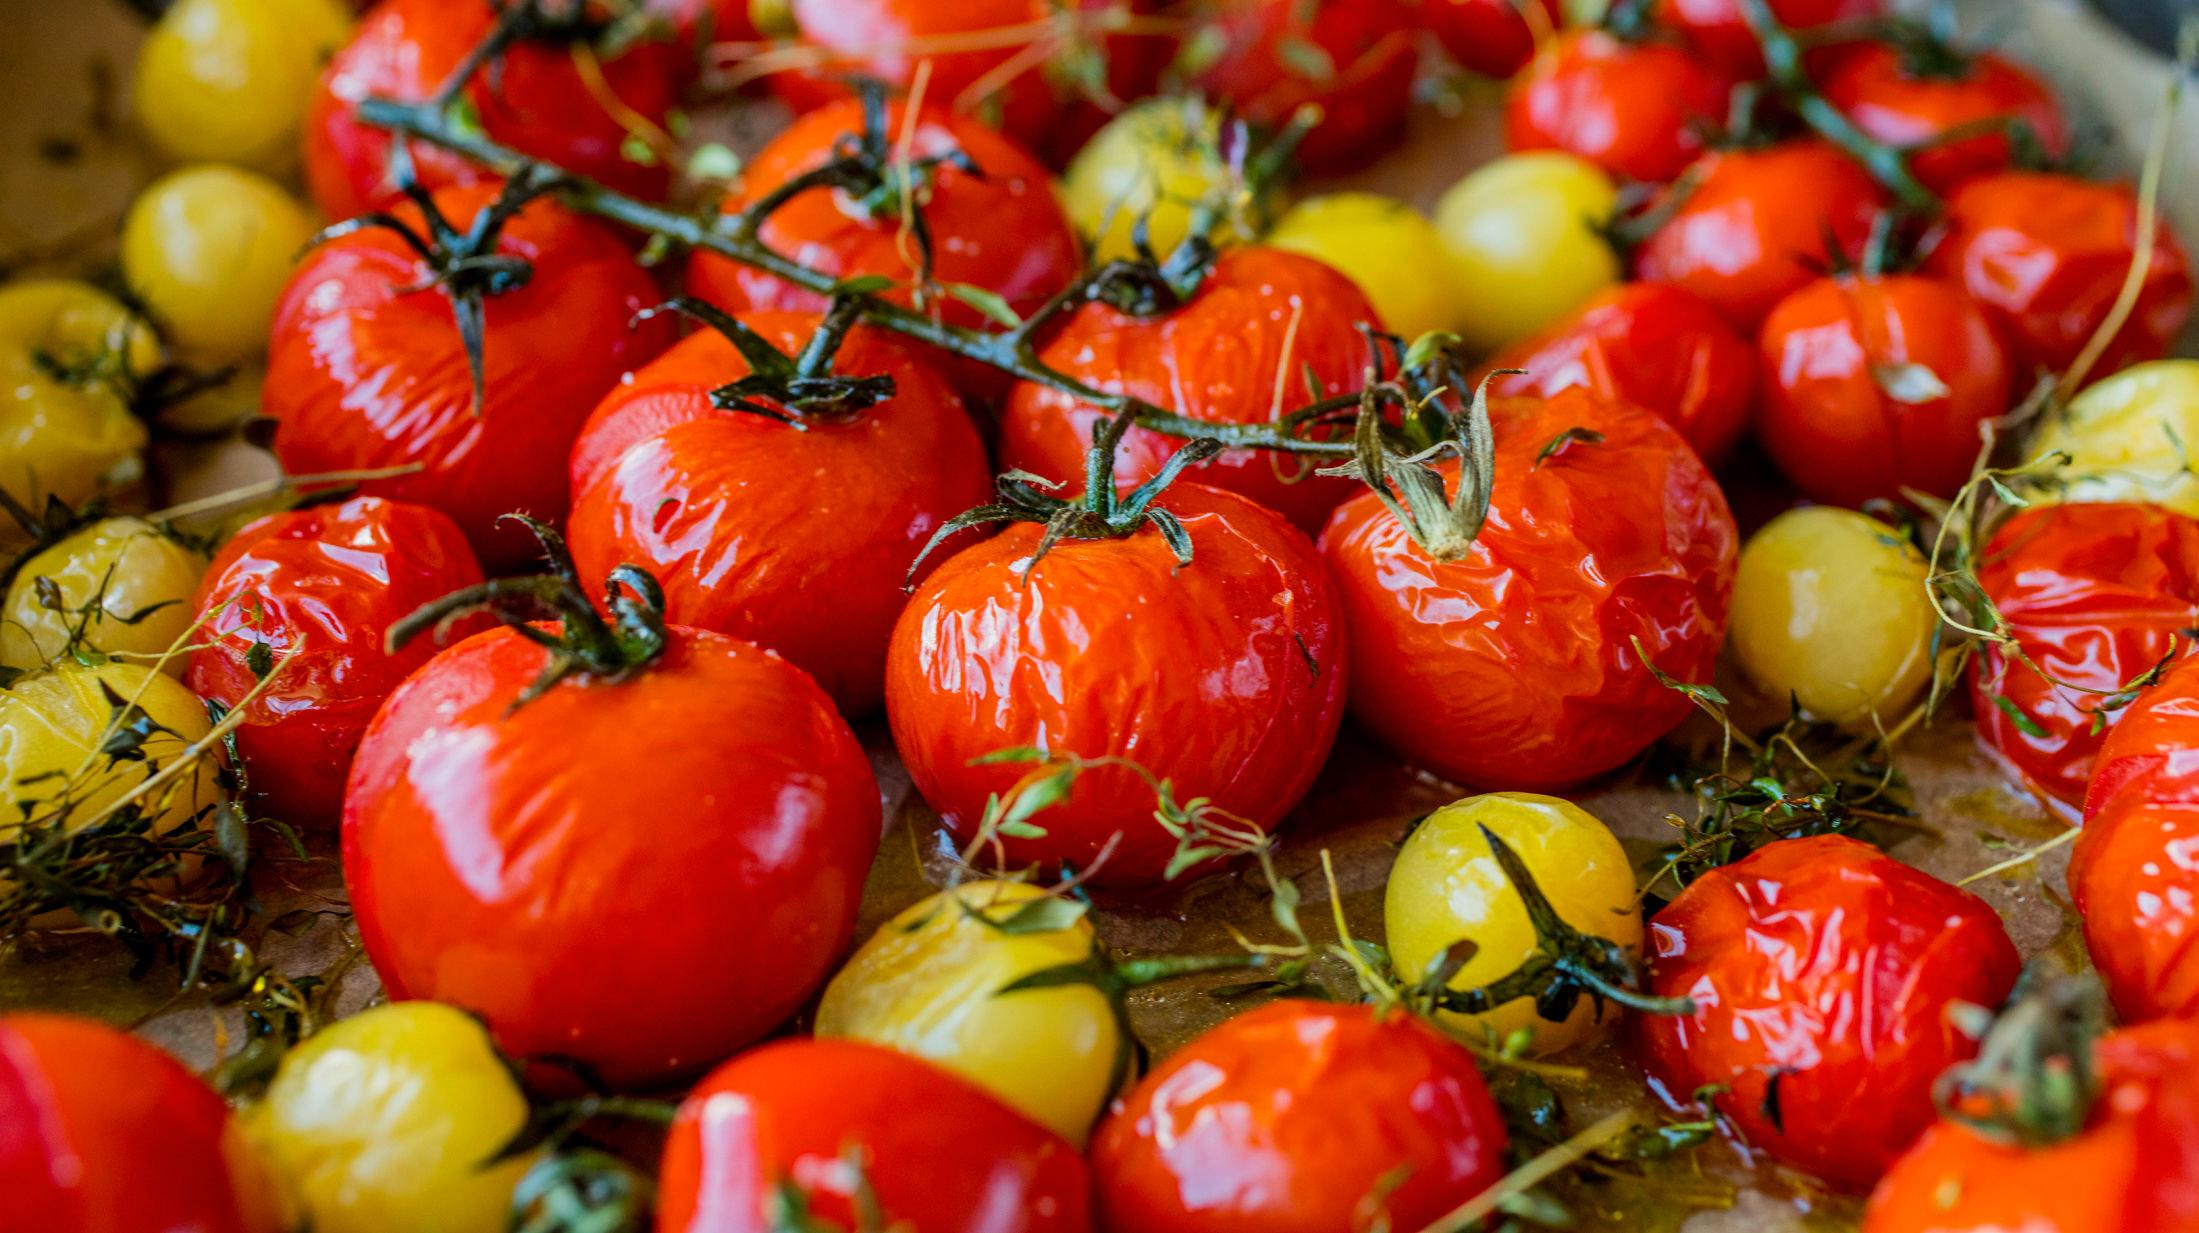 PASSER TIL ALT: Tomaten kan brukes til alt - særlig hvis du ovnsbaker den med litt god olivenolje og friske urter. Foto: Sara Johannessen/VG.